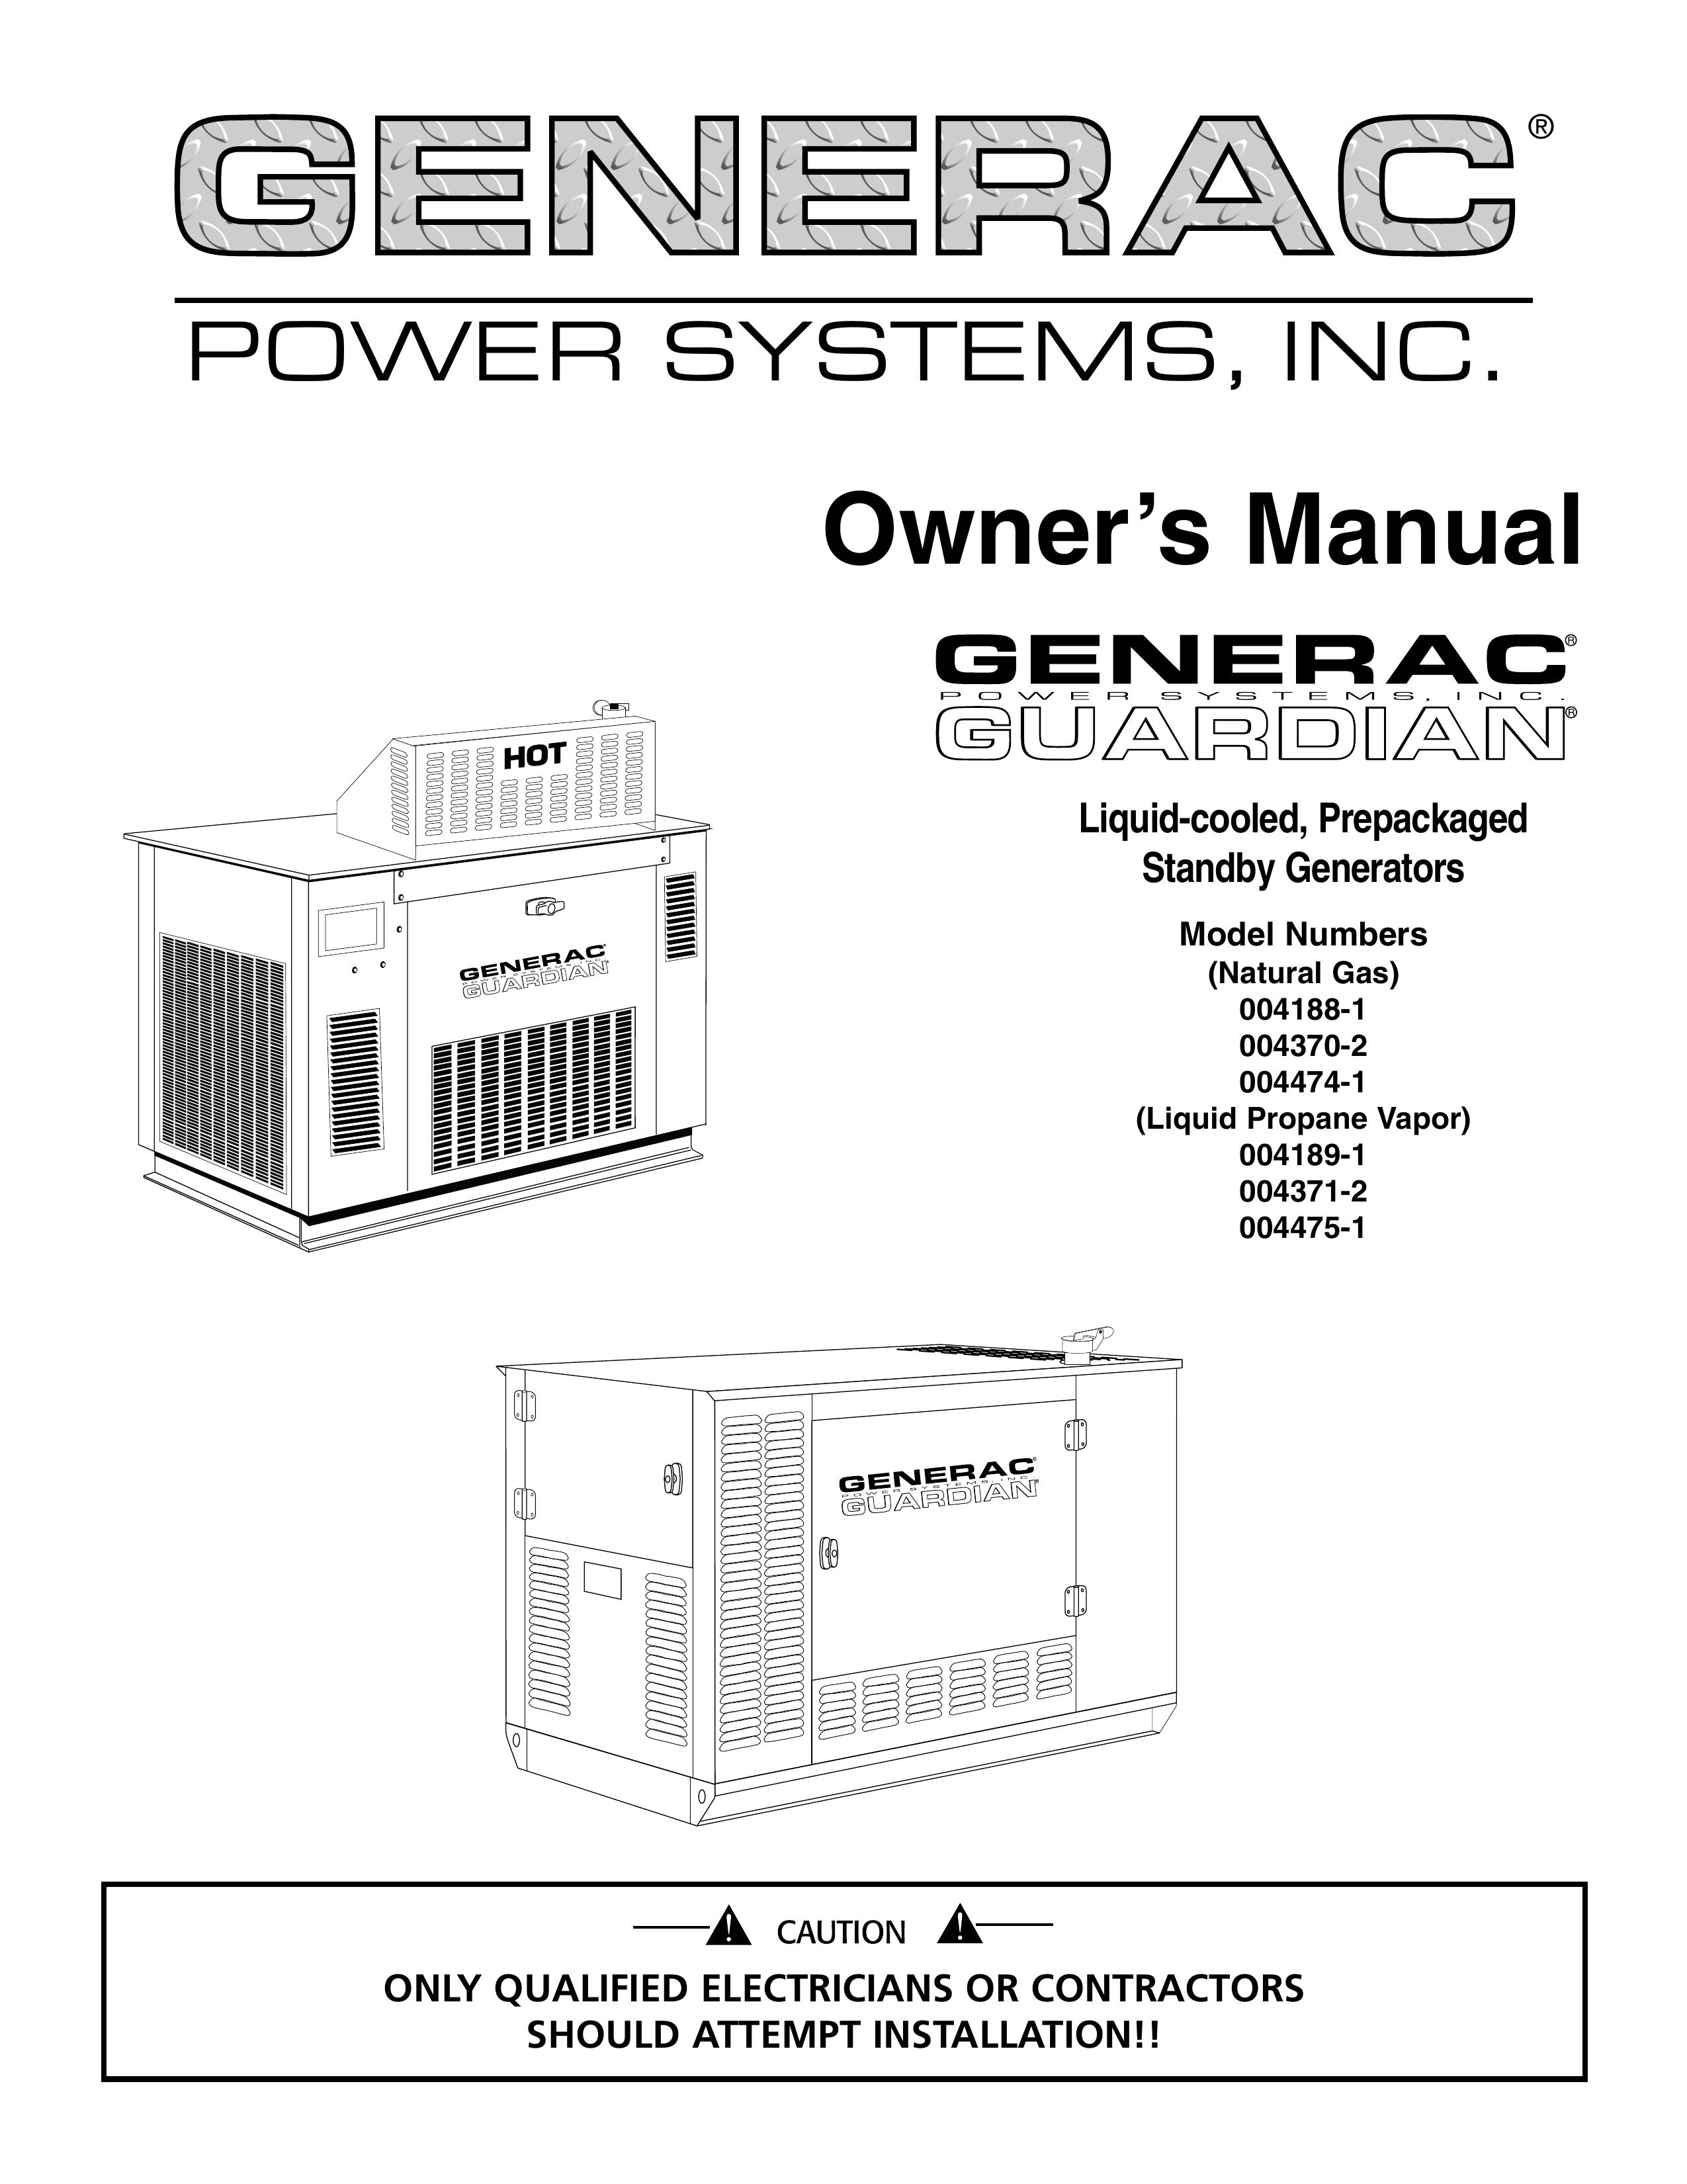 Generac 004370-2 Portable Generator User Manual